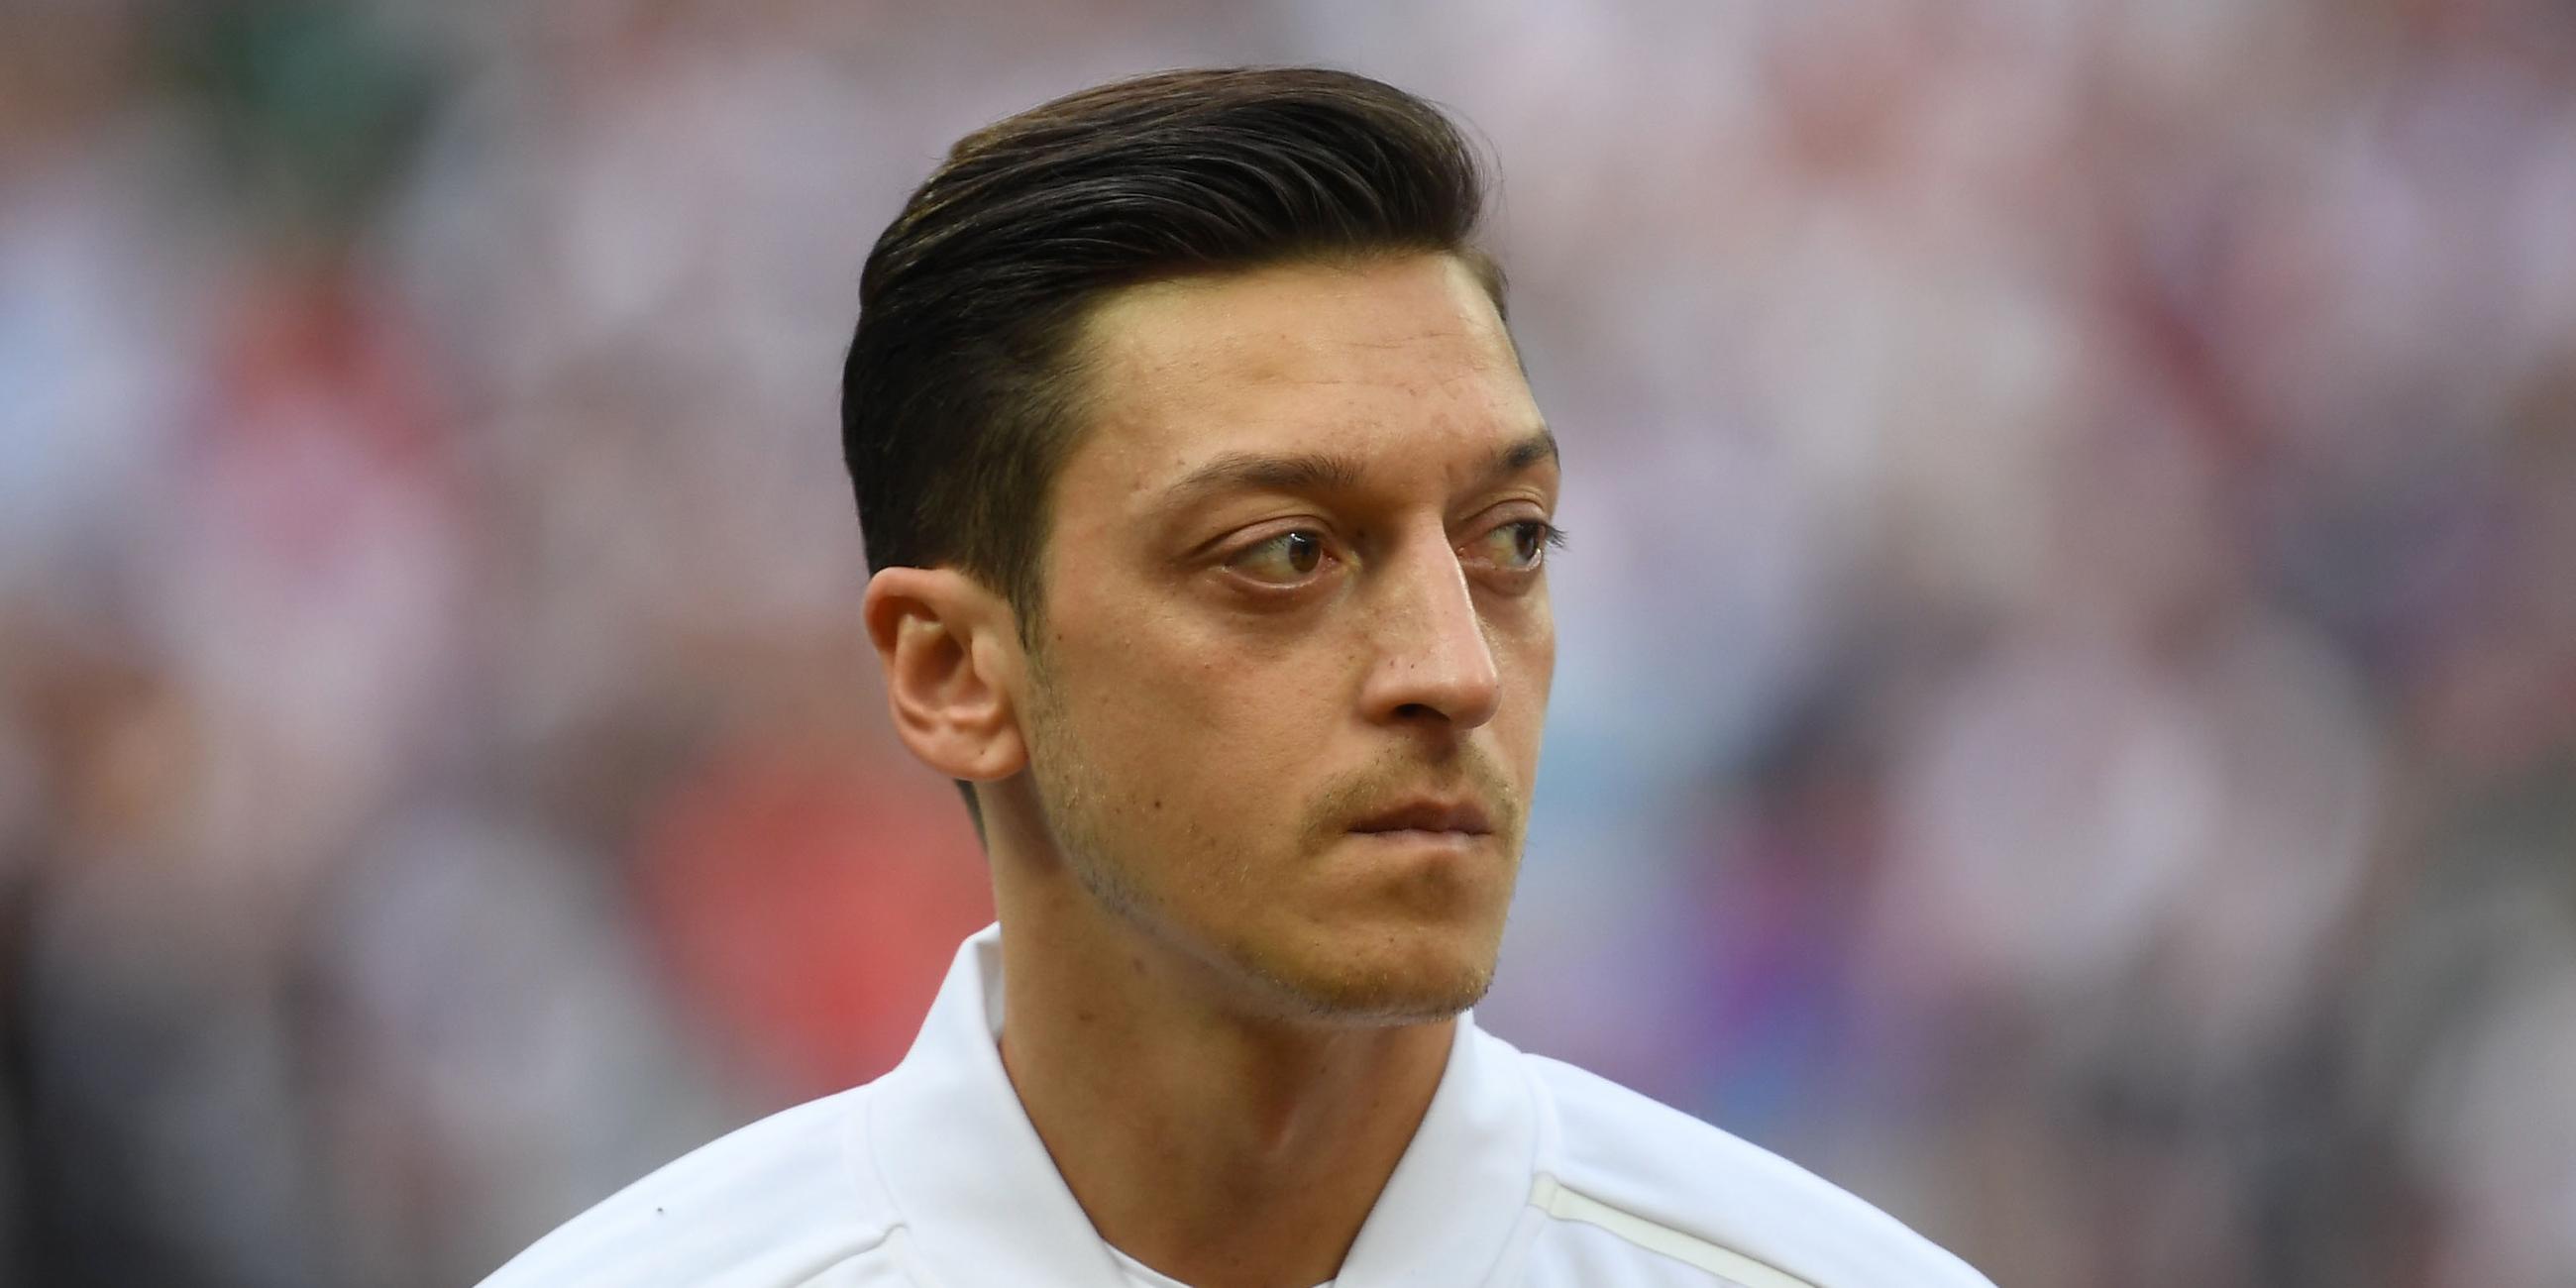 Mesut Özil, aufgenommen am 15.06.2018 in Moskau (Russland)